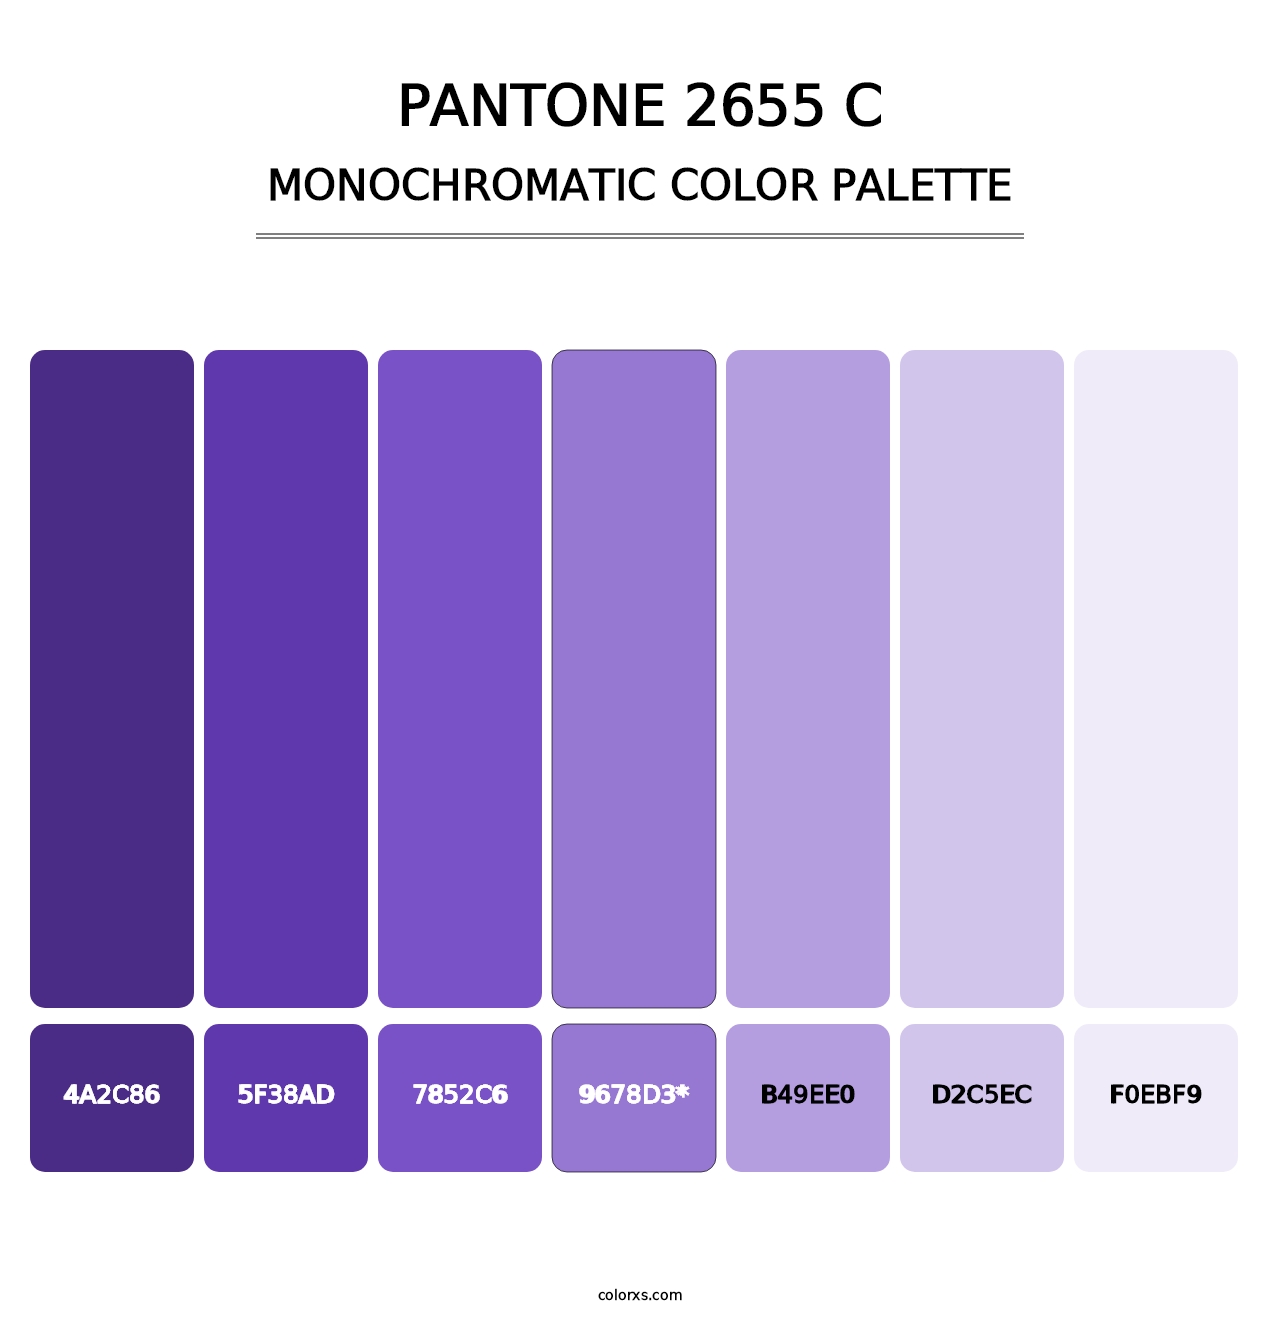 PANTONE 2655 C - Monochromatic Color Palette